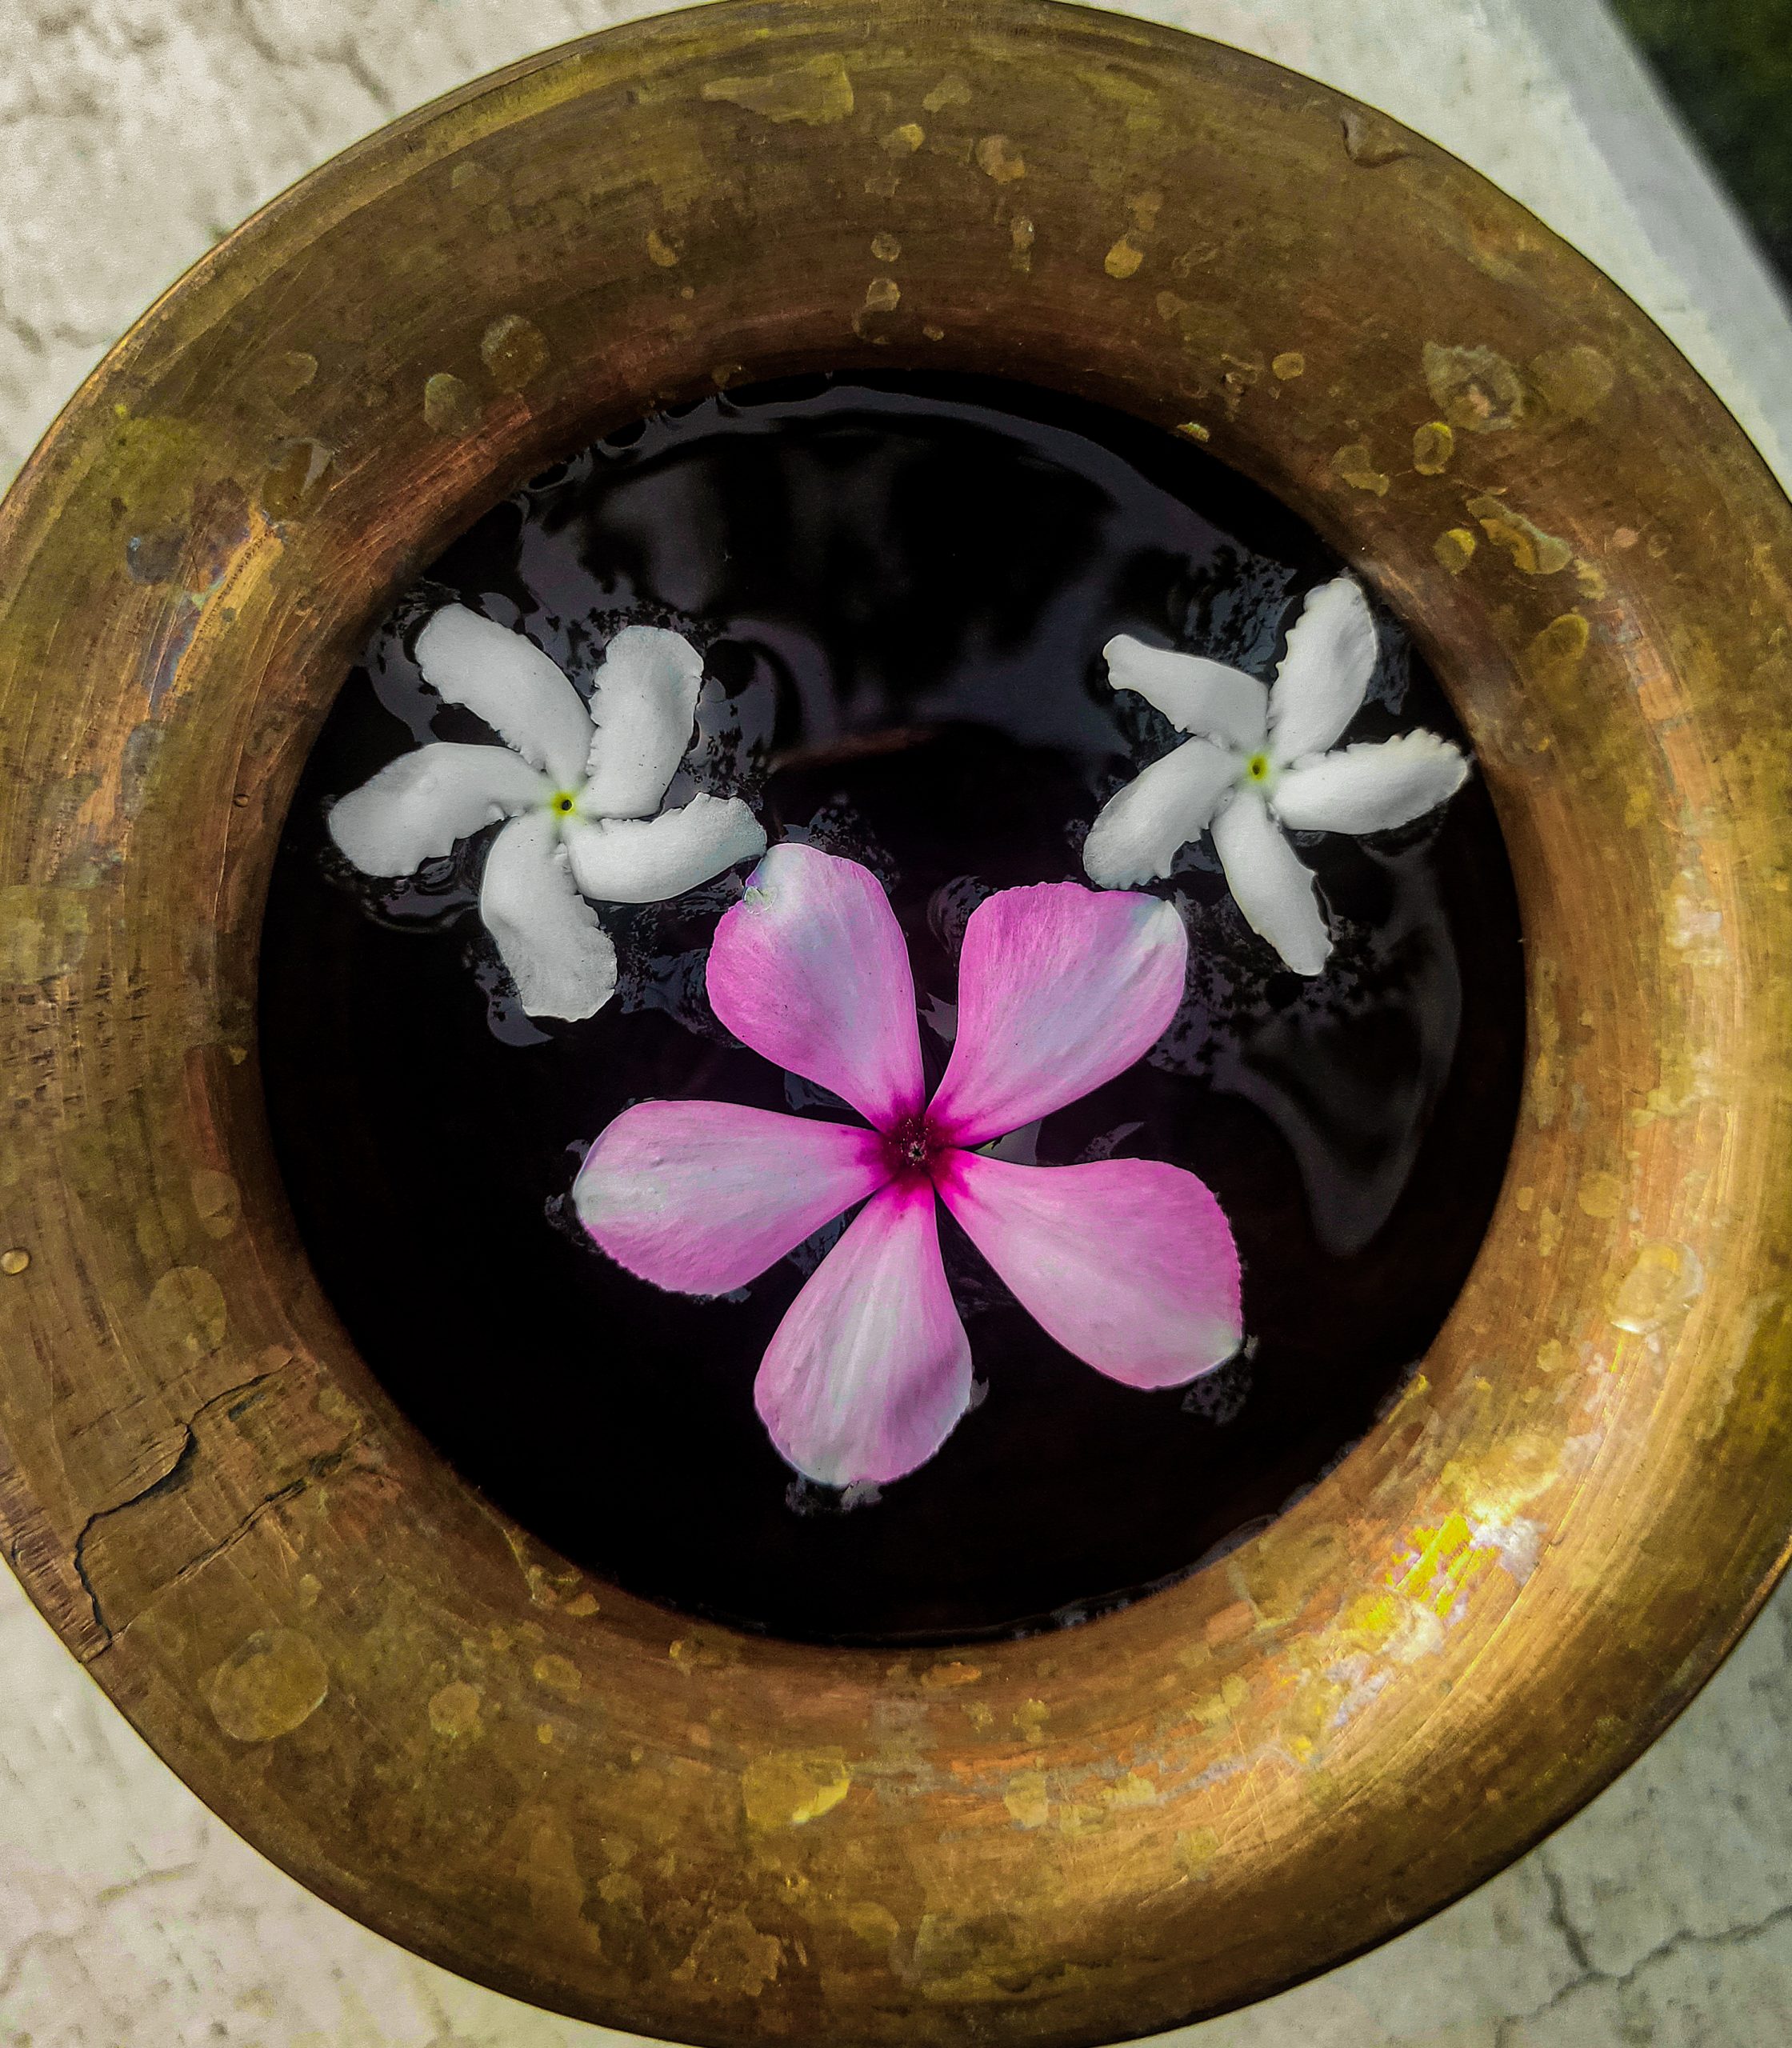 Flowers in a brass pot.